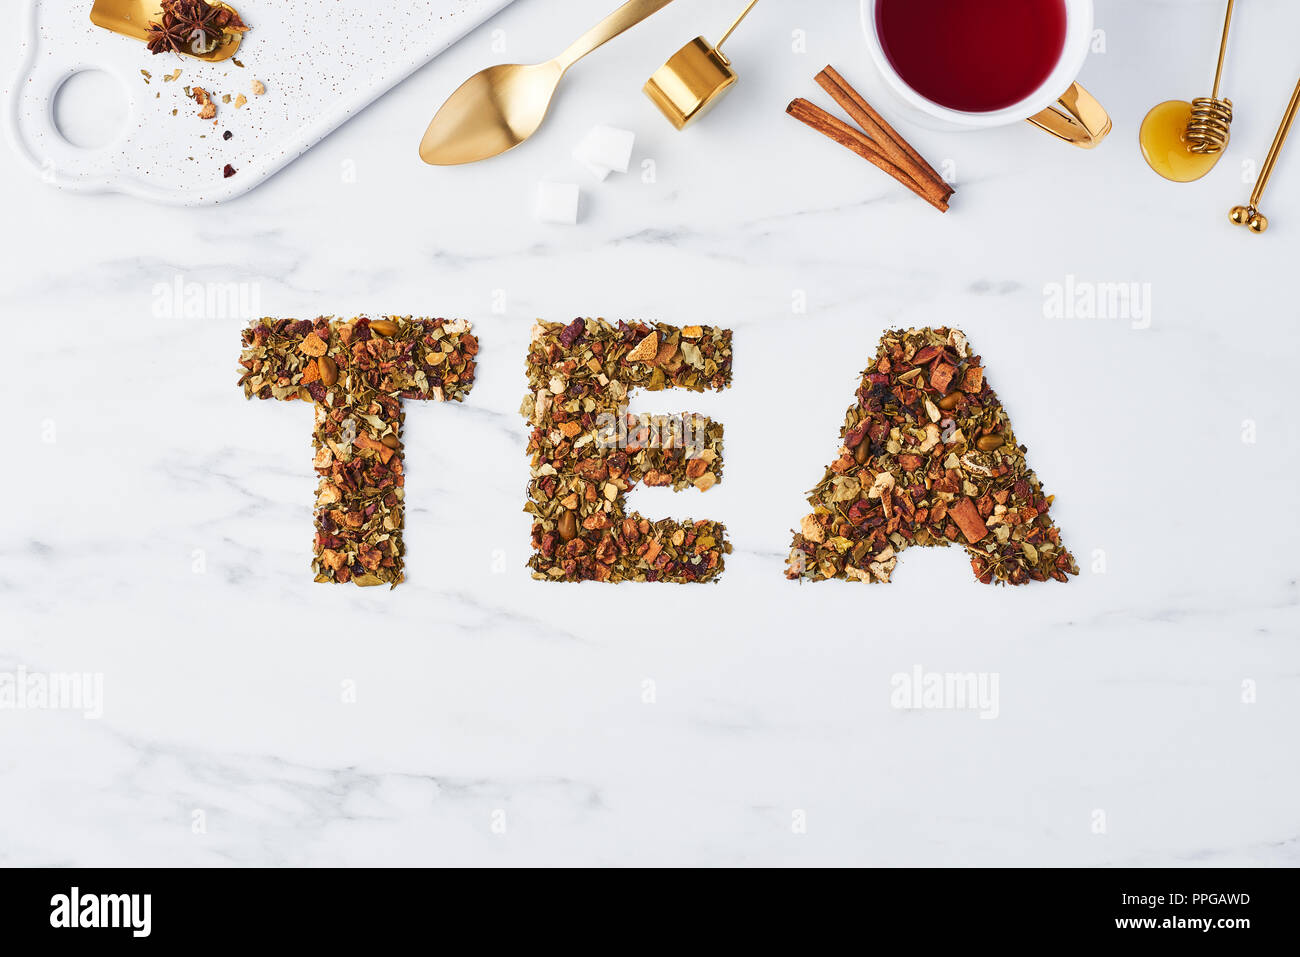 Tee - Wort für getrocknete Kräuter und Früchte auf weißem Hintergrund mit Tee Utensilien oben geschrieben. Flach mit kopieren. Tee Konzept, Ansicht von oben. Stockfoto